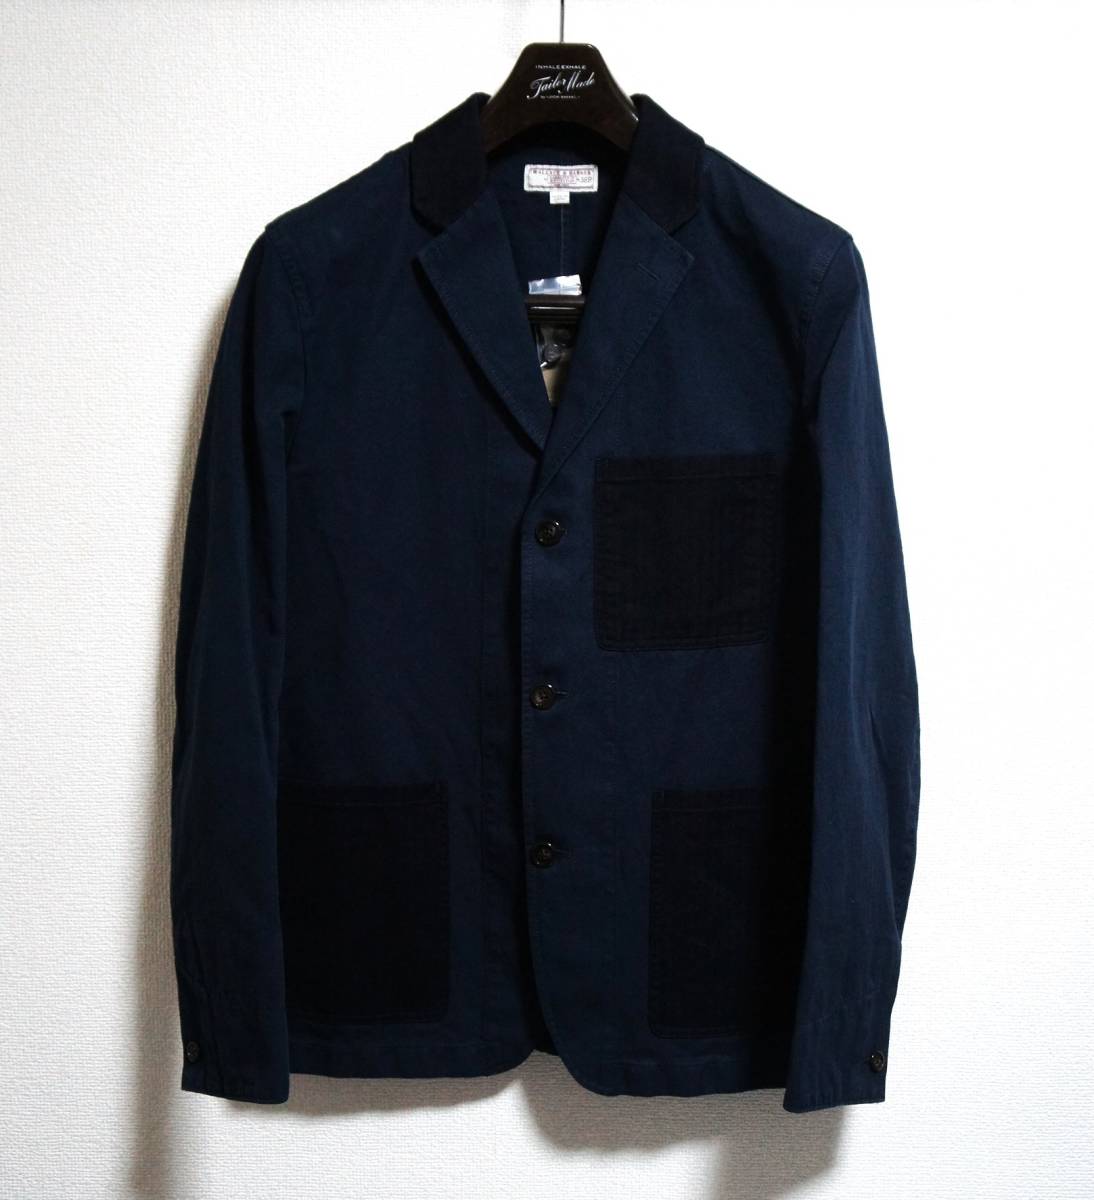 【新品】サイズ:40R (L相当) WALLACE & BARNES ウォレス&バーンズ blazer in Italian cotton-linen blend 麻混綿 3つボタン ジャケット_画像2